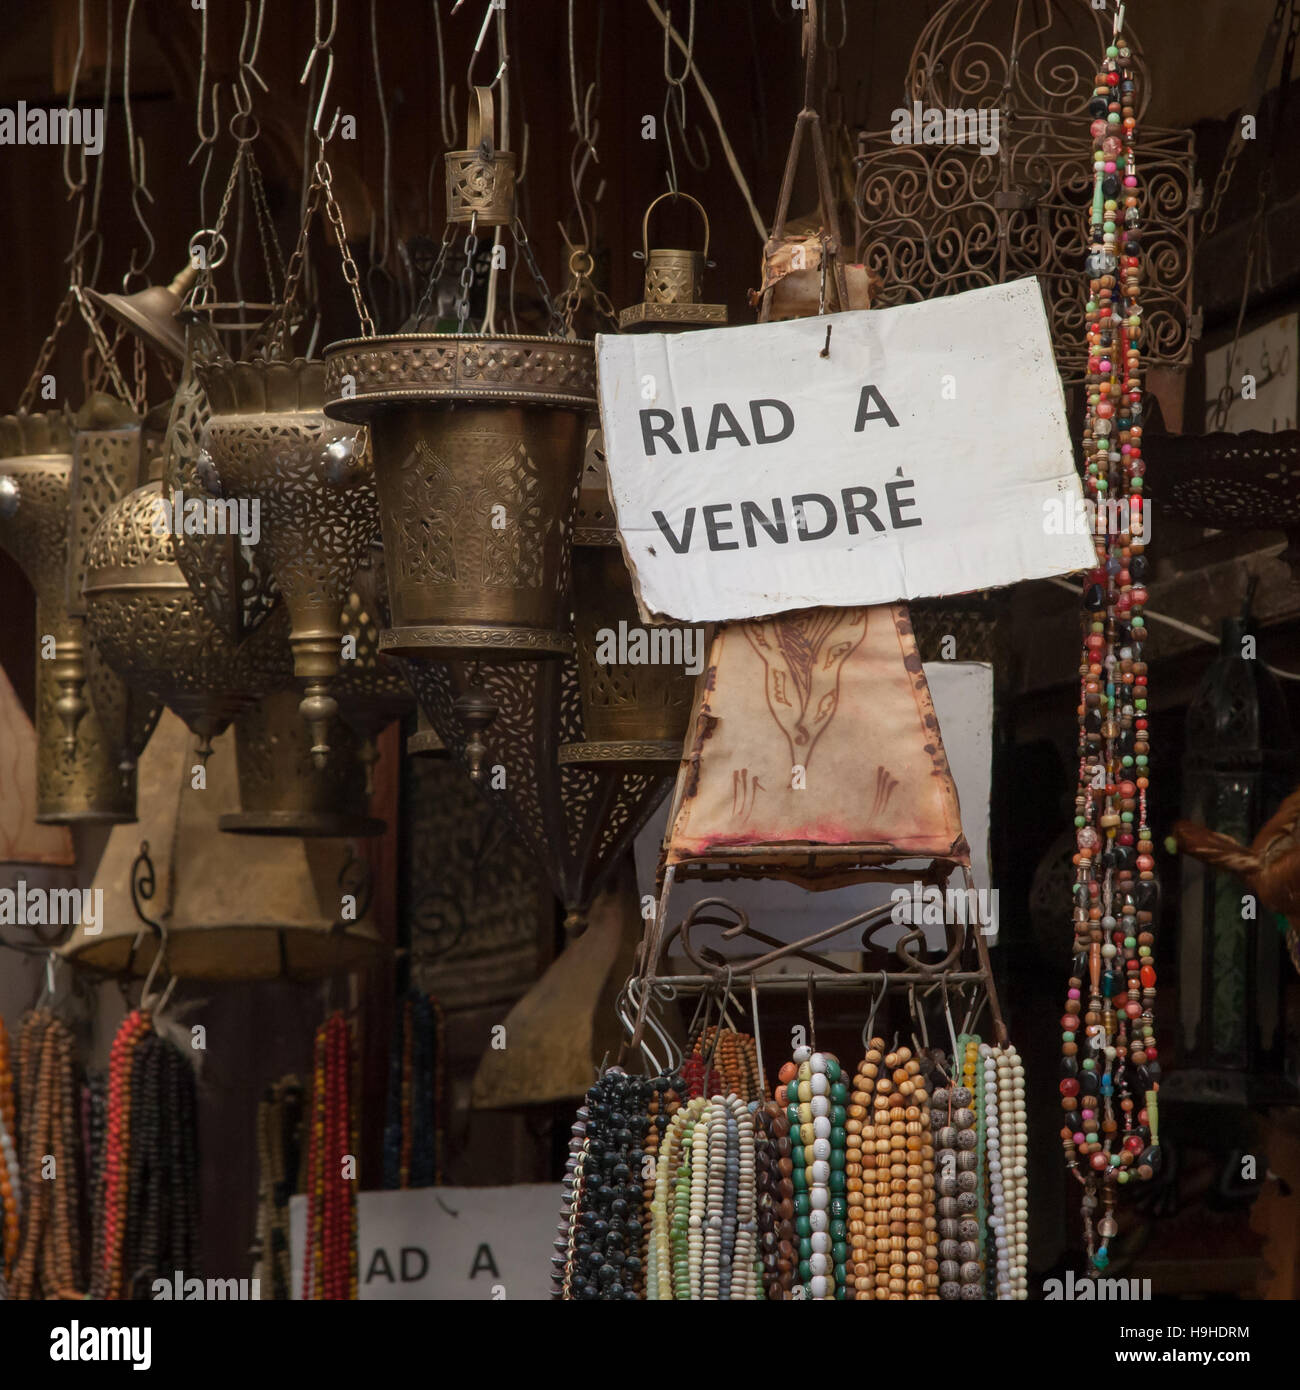 Riad ist eine Art Hotel in Marokko. Unser Reporter wurde am letzten Tag fast schwach und wurde Hotelier, als er das Zeichen sah: 'Riad zum Verkauf' Stockfoto